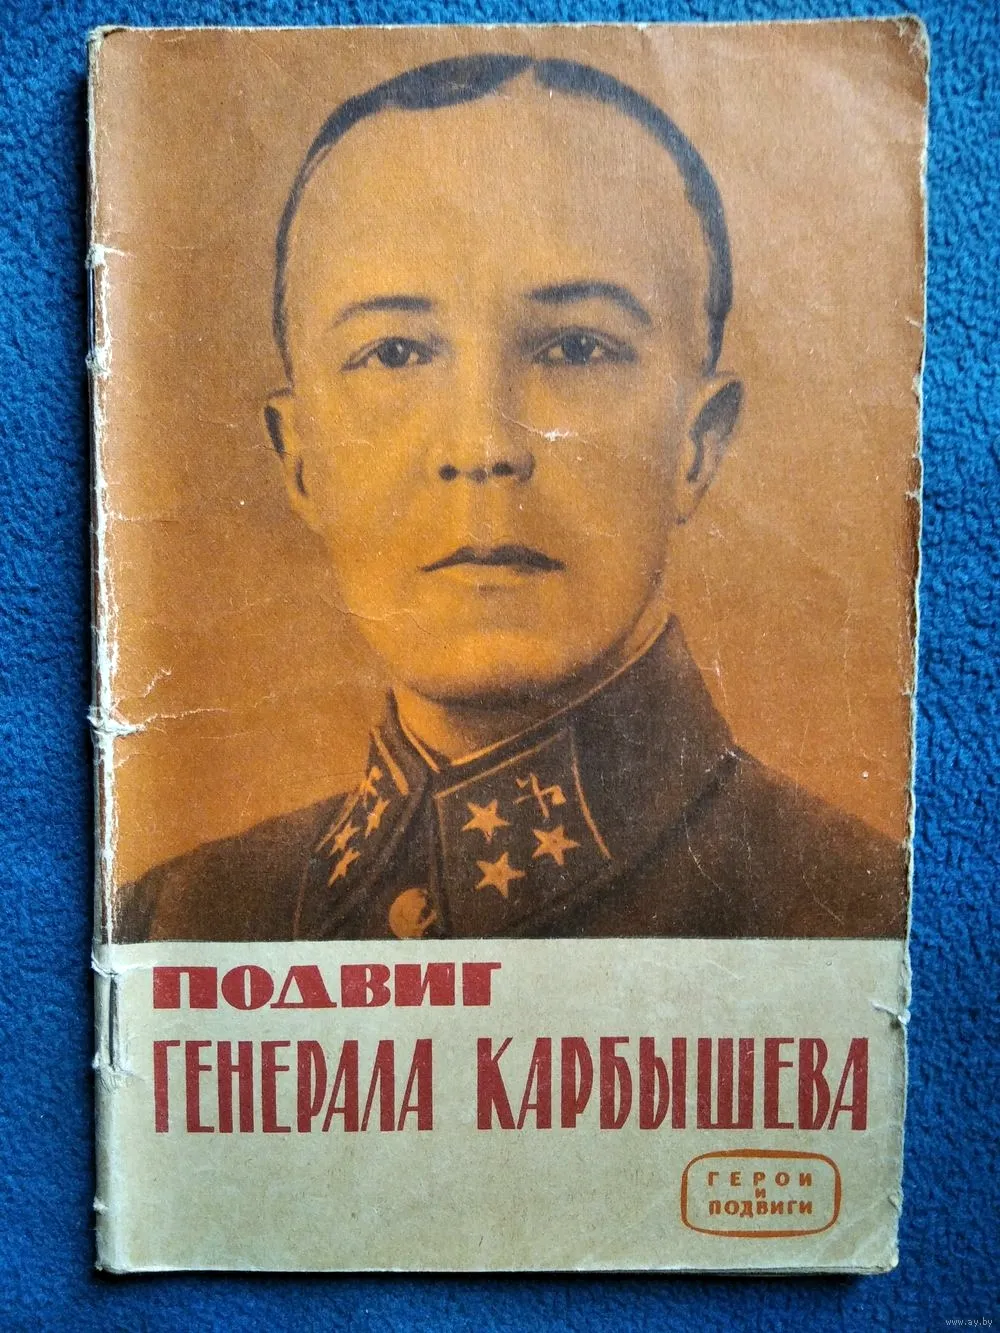 Генерал Карбышев подвиг подвиг